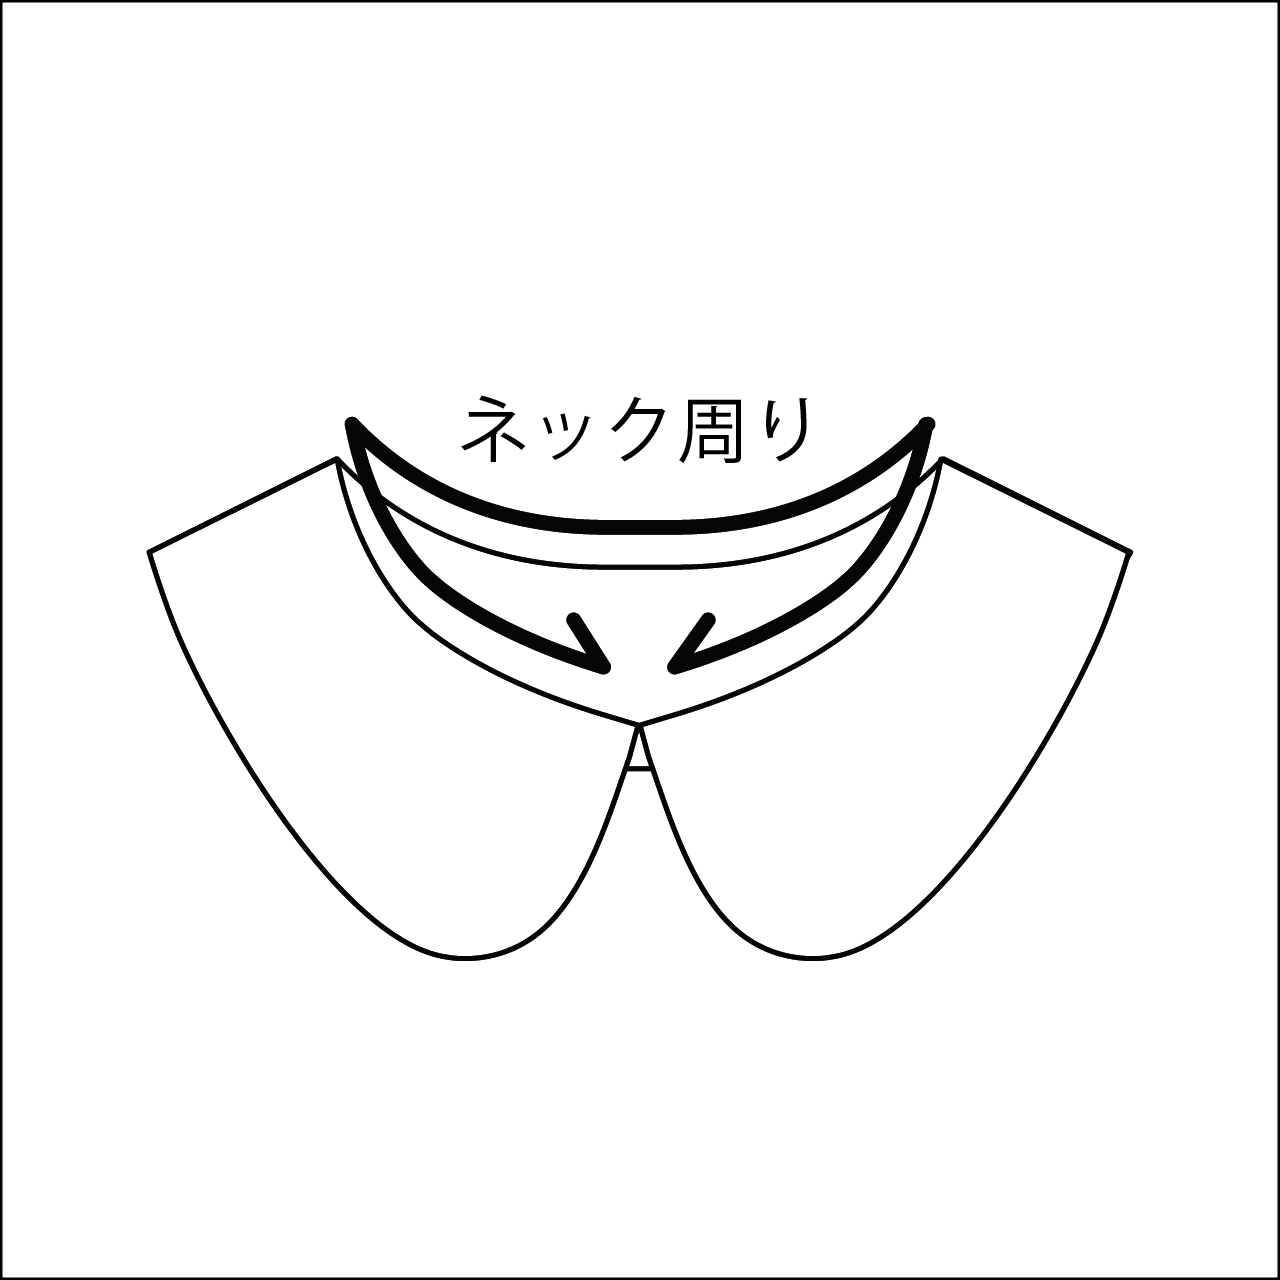 付けえり丸型ーキッズ用 型紙と作り方のセット Ac 03 子供服の型紙ショップ Tsukuro ツクロ